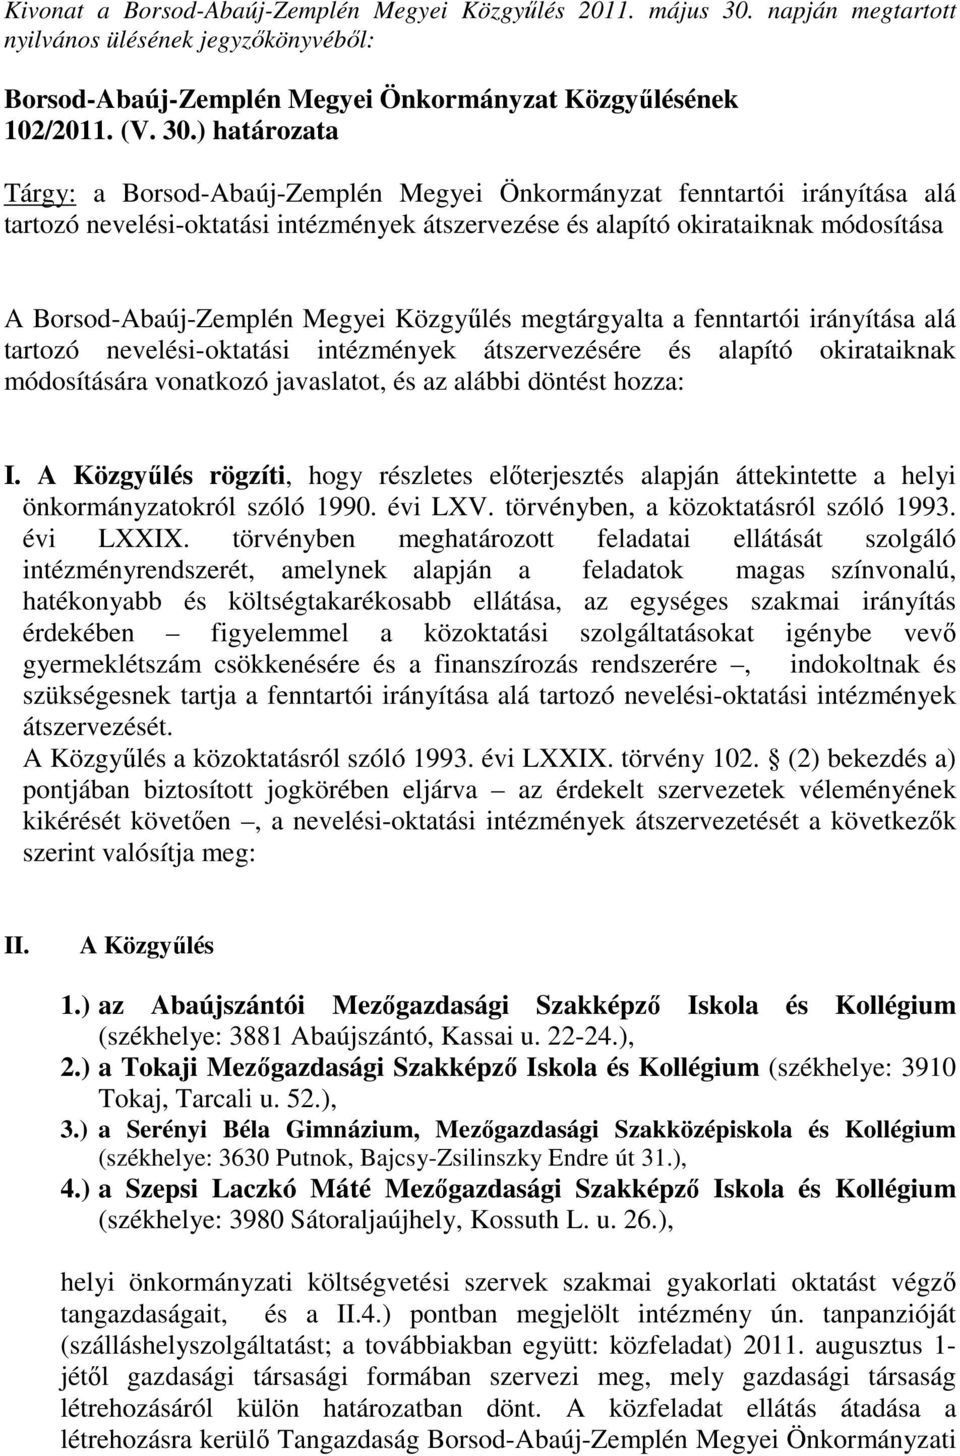 ) határozata Tárgy: a Borsod-Abaúj-Zemplén Megyei Önkormányzat fenntartói irányítása alá tartozó nevelési-oktatási intézmények átszervezése és alapító okirataiknak módosítása A Borsod-Abaúj-Zemplén